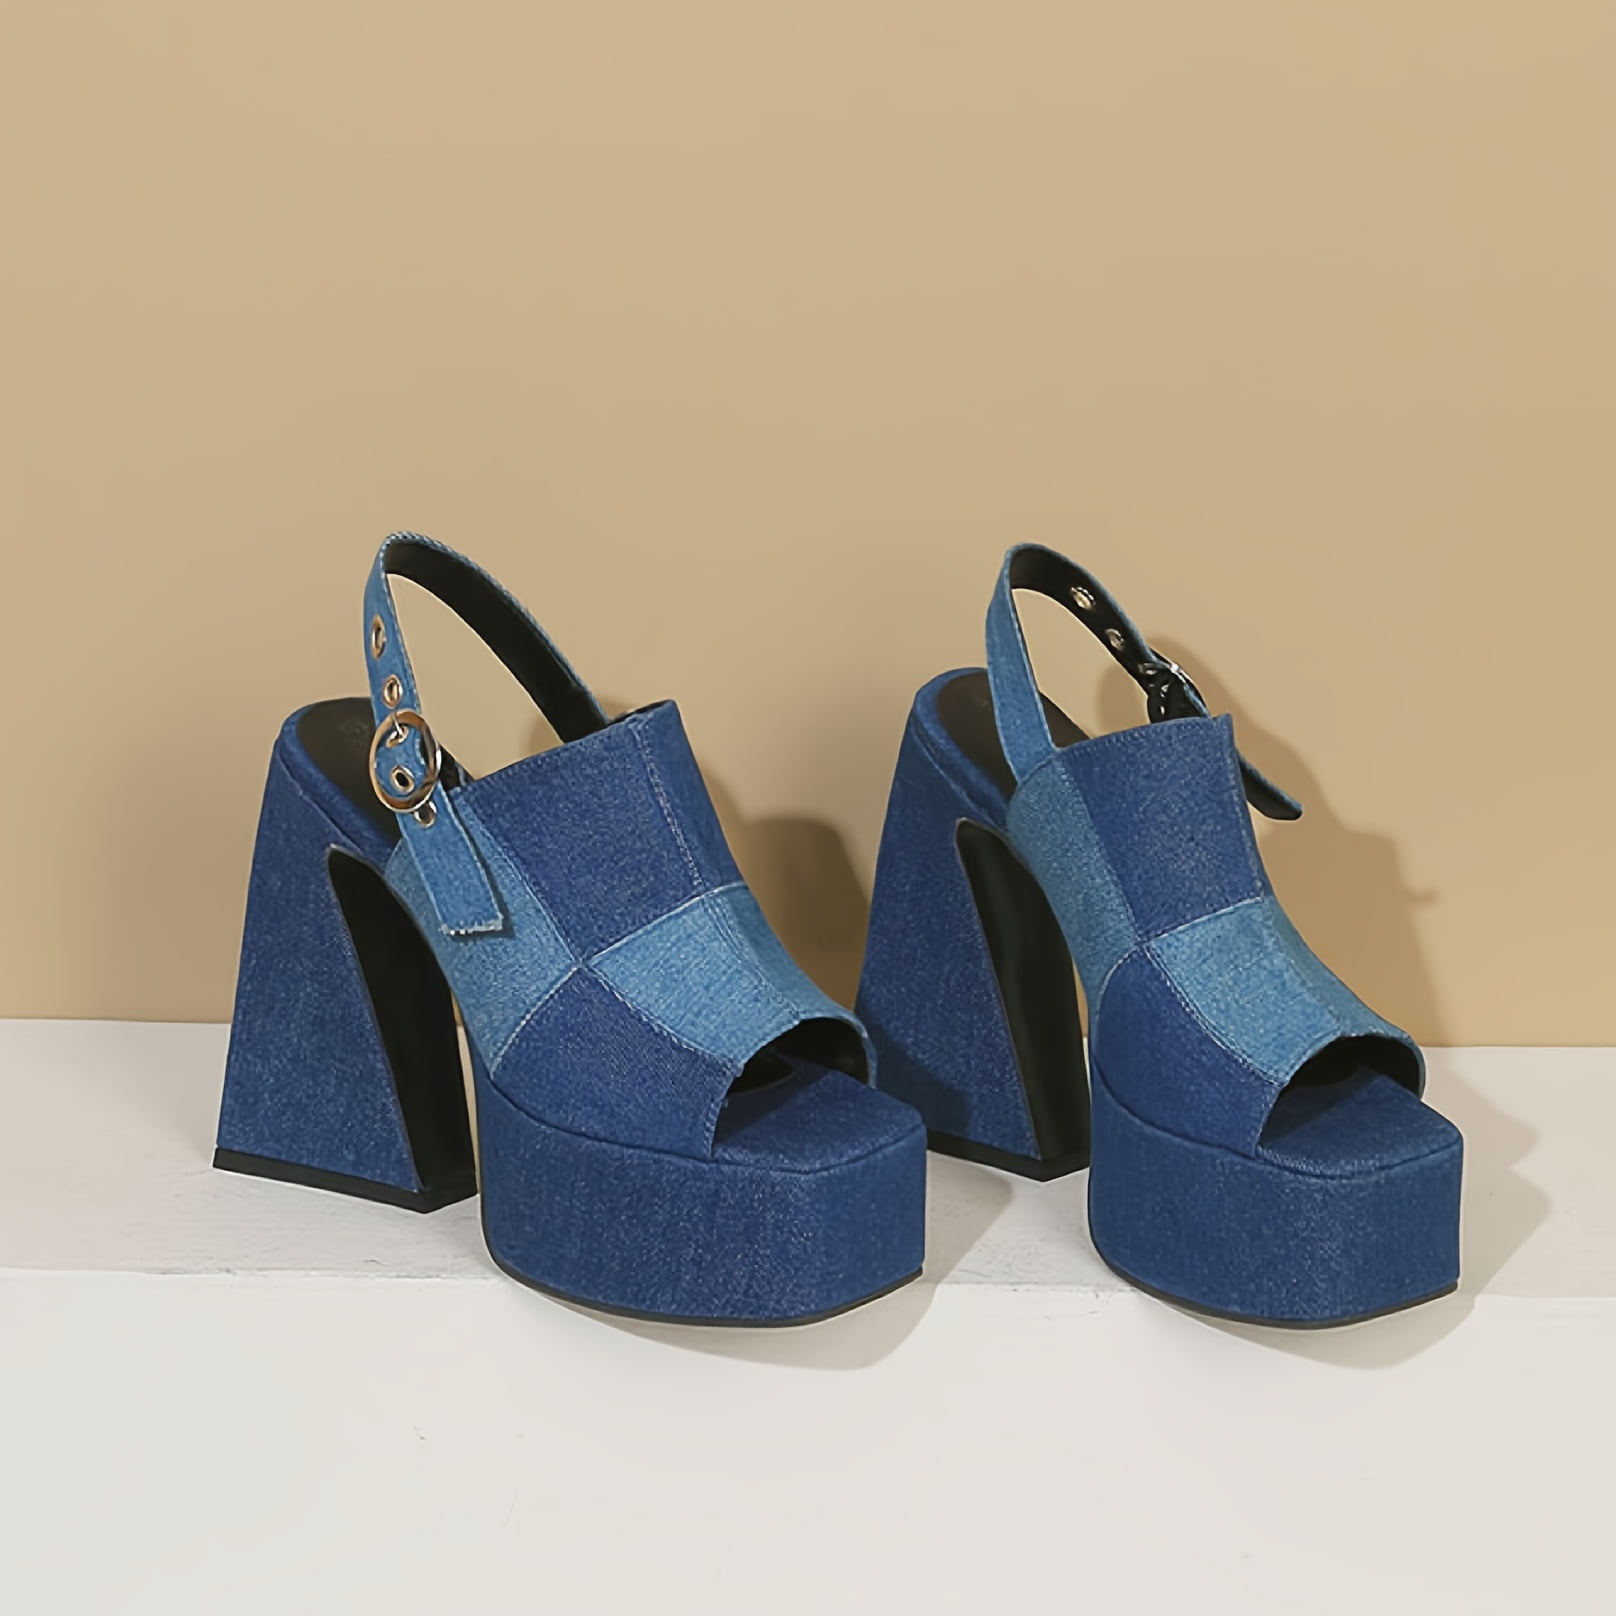 KINODAY Women‘s Colorblock Denim Block Heel Sandals with Open Toe and ...